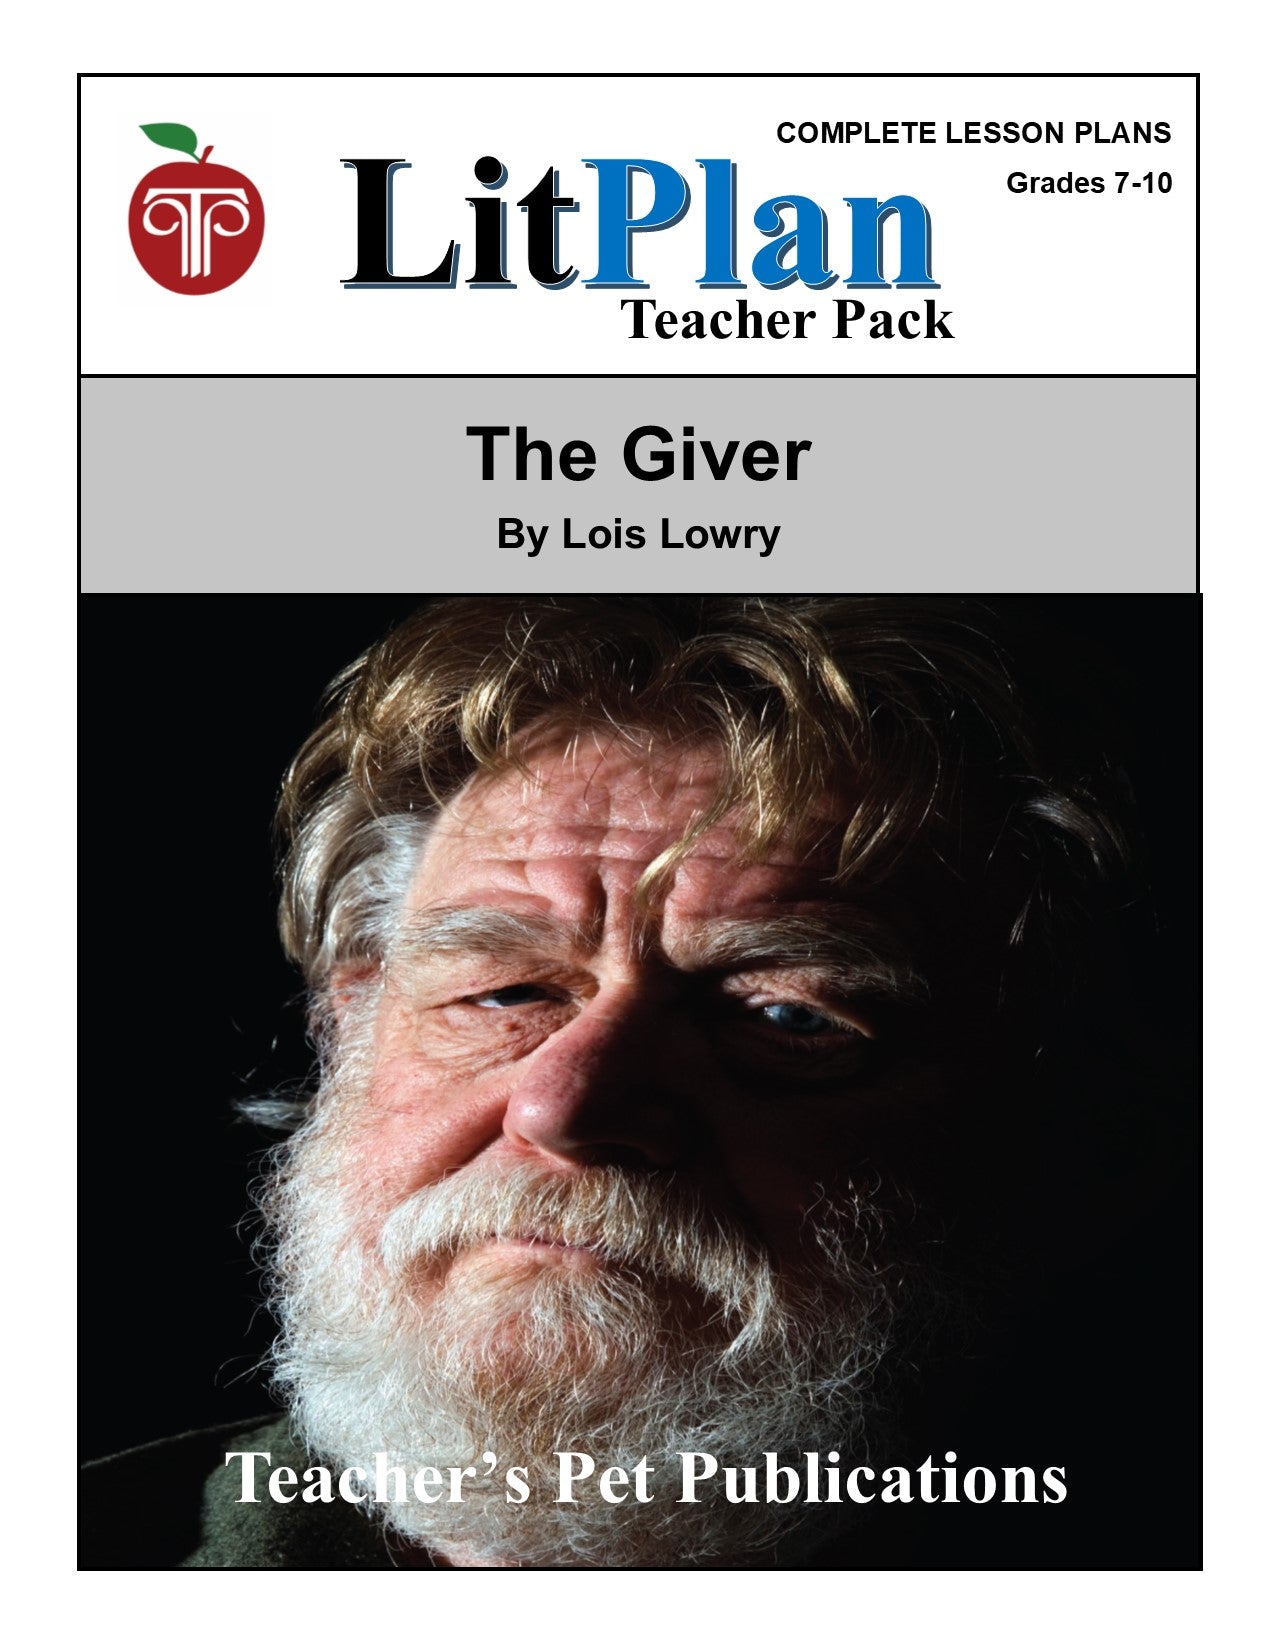 The Giver: LitPlan Teacher Pack Grades 7-10